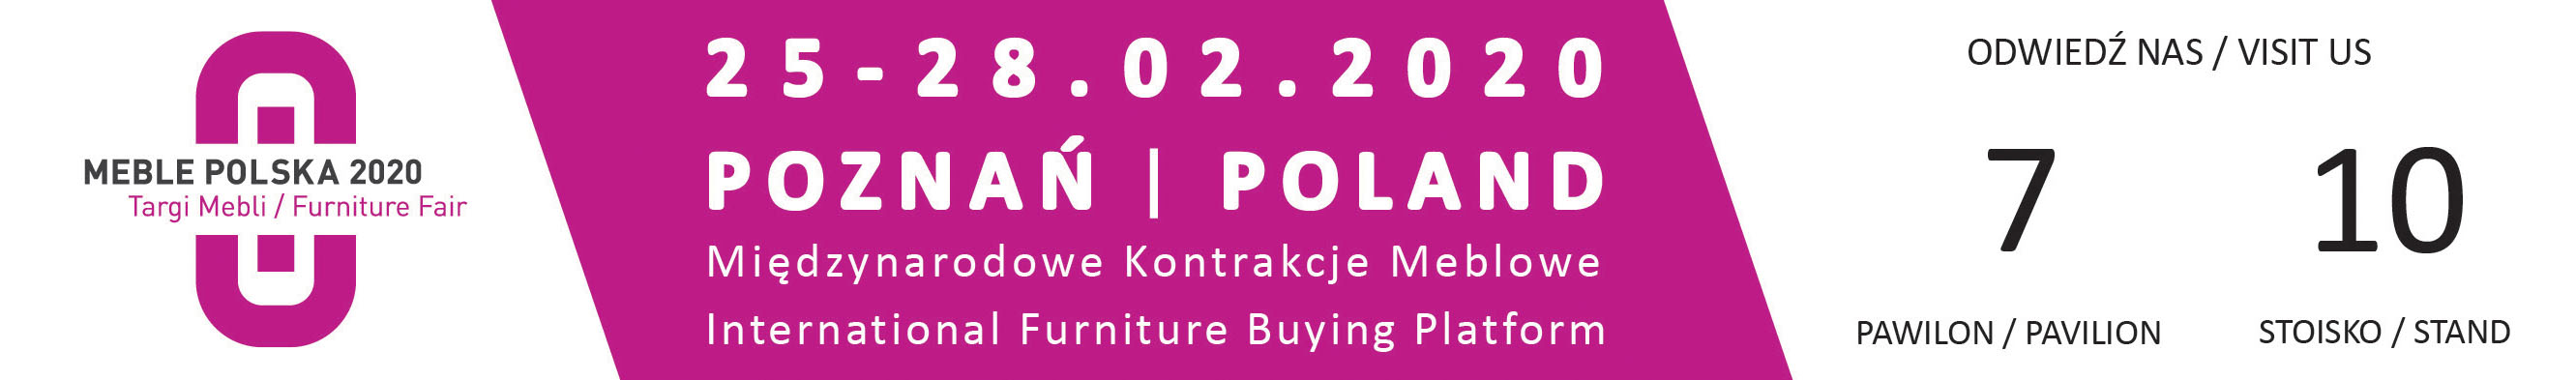 Tobo_Targi_meble_Polska_poznan_2020.jpg